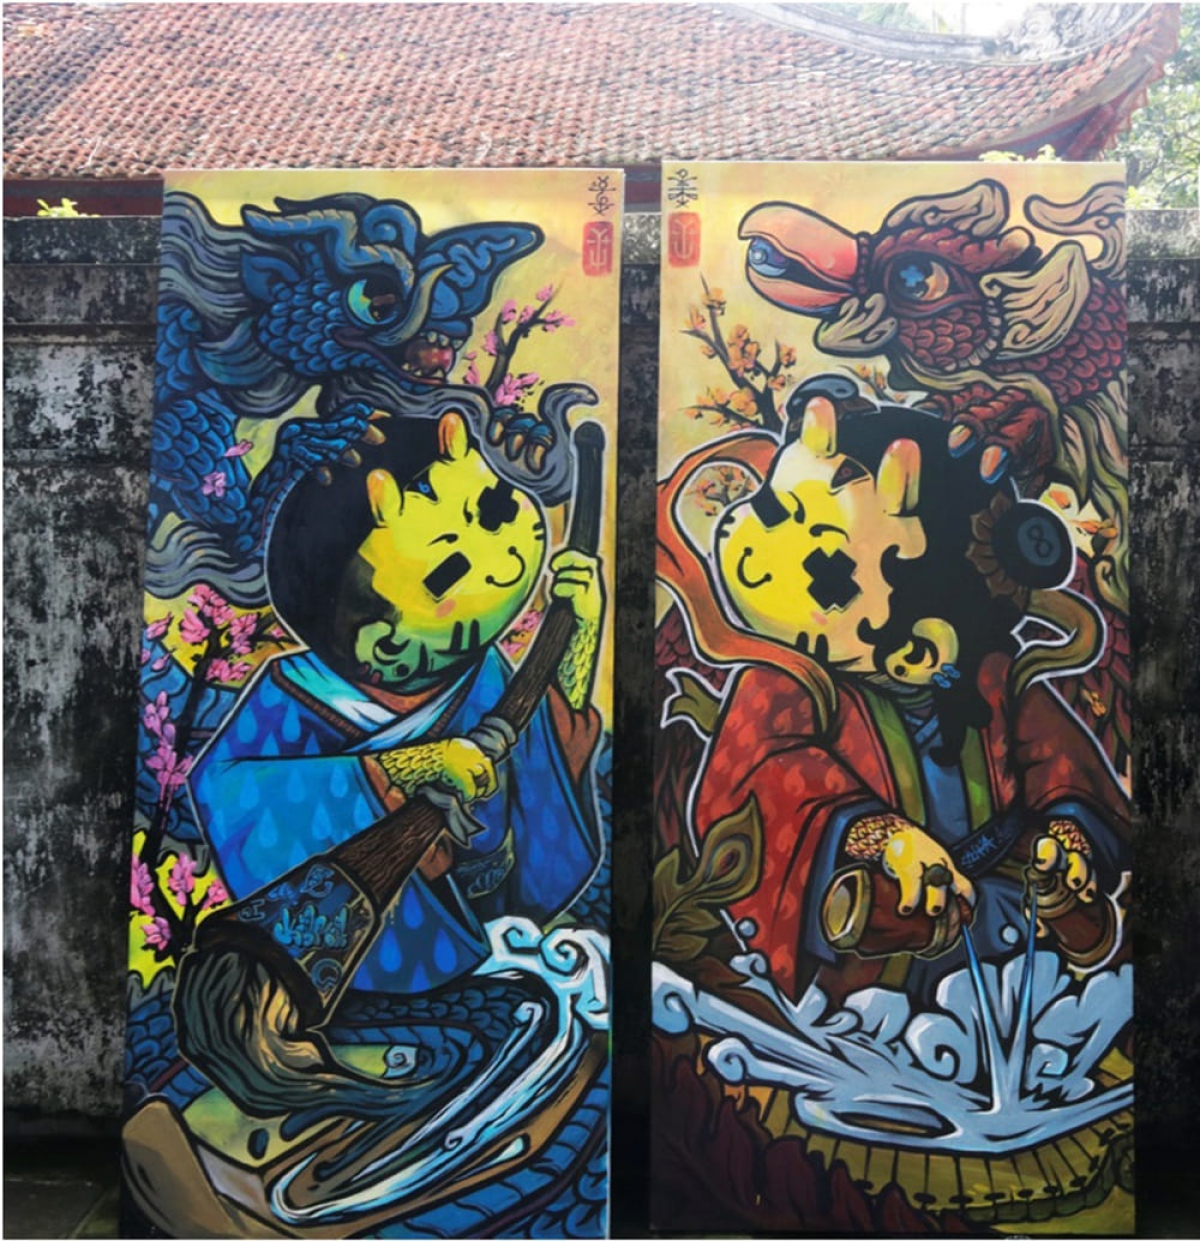 Tác phẩm Graffiti của Trang Nhơn Khoa (Zkhoa)